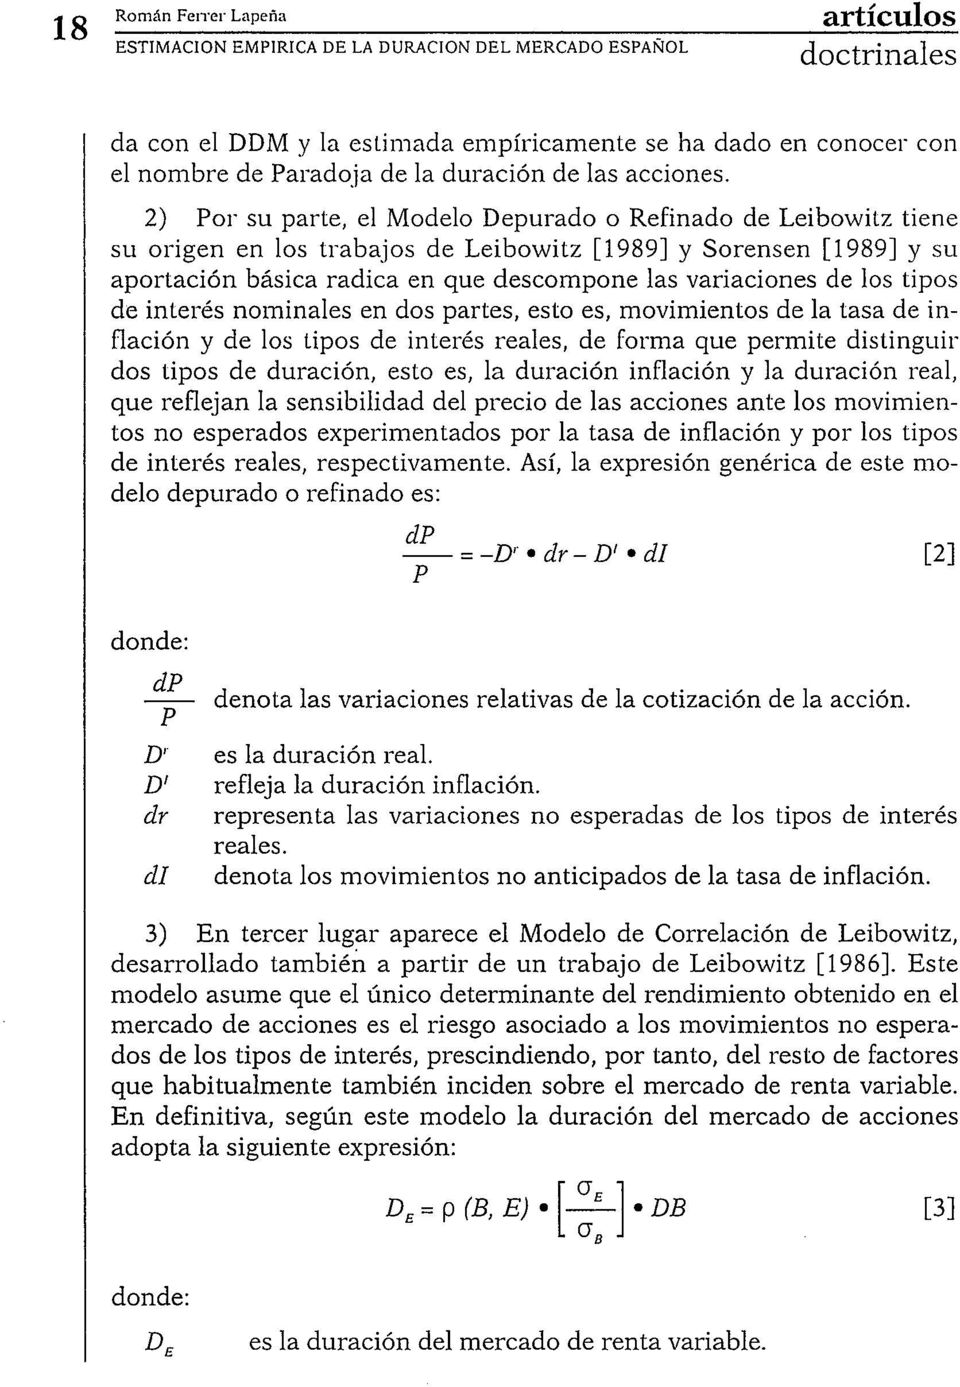 2) Por su parte, el Modelo Depurado o Refinado de Leibowitz tiene su origen en los trabajos de Leibowitz [1989] y Sorensen [1989] y su aportación básica radica en que descompone las variaciones de